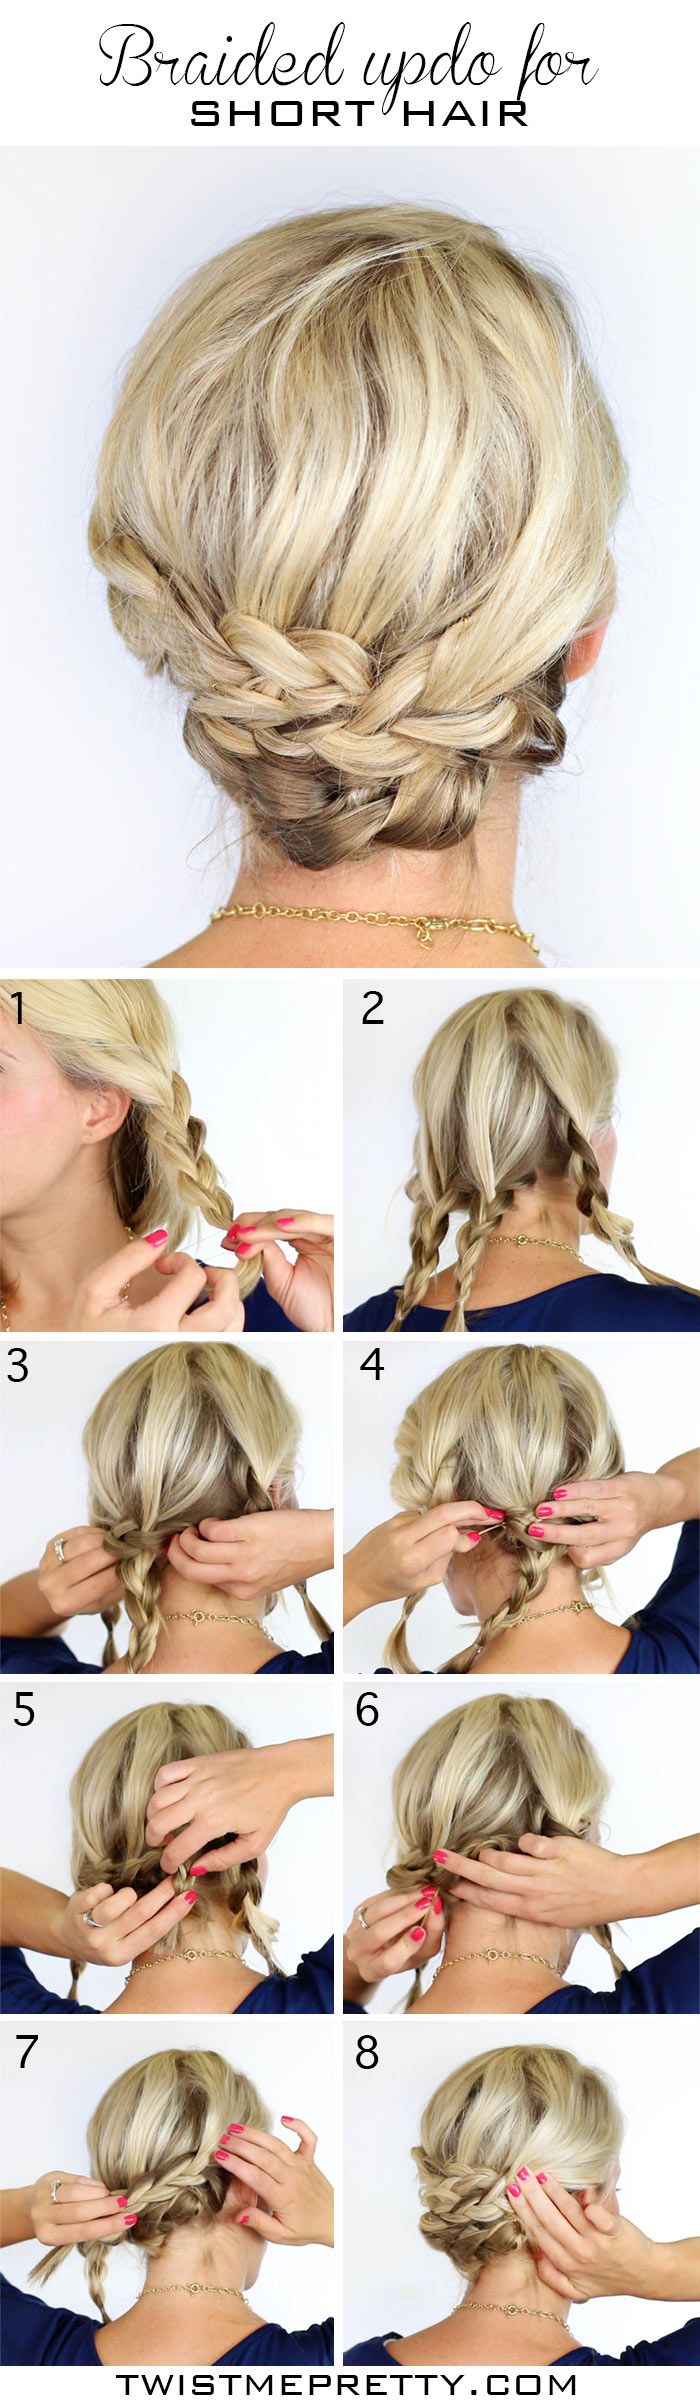 12 Pretty Braided Hairstyles for Short Hair - Pretty Designs